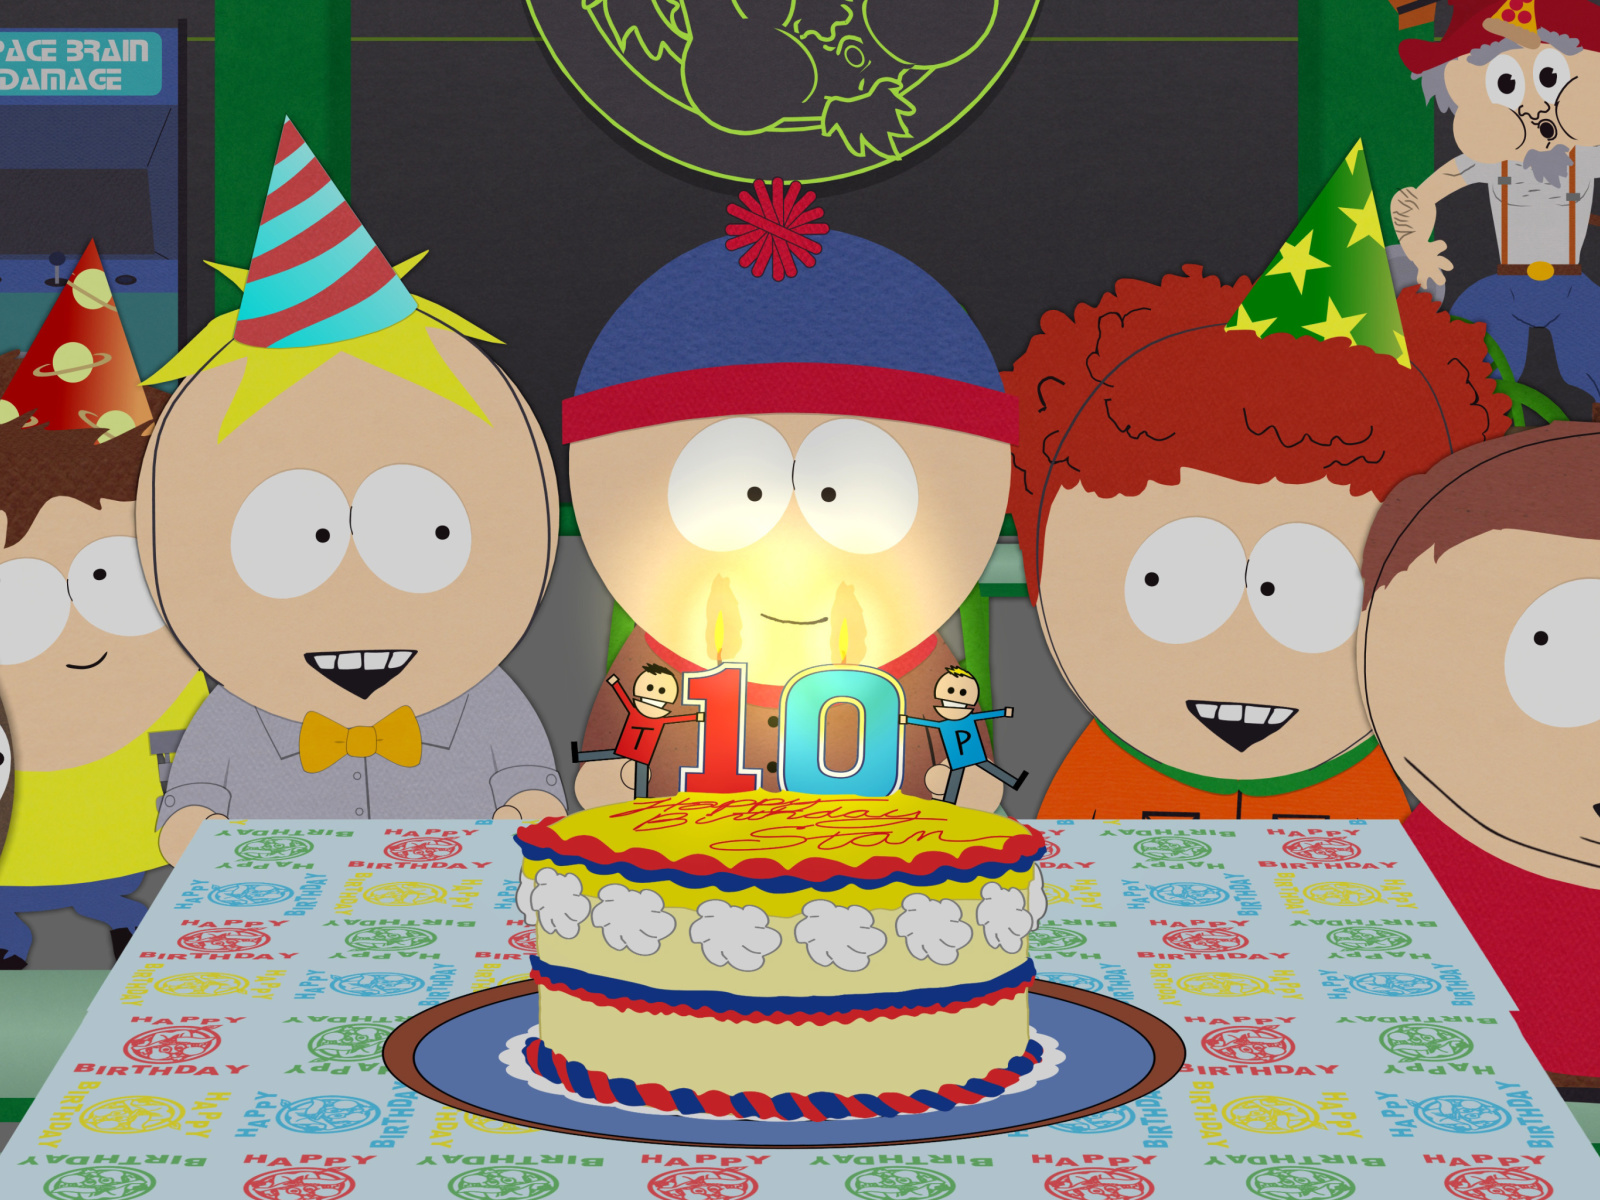 South Park Season 15 Stans Party wallpaper 1600x1200